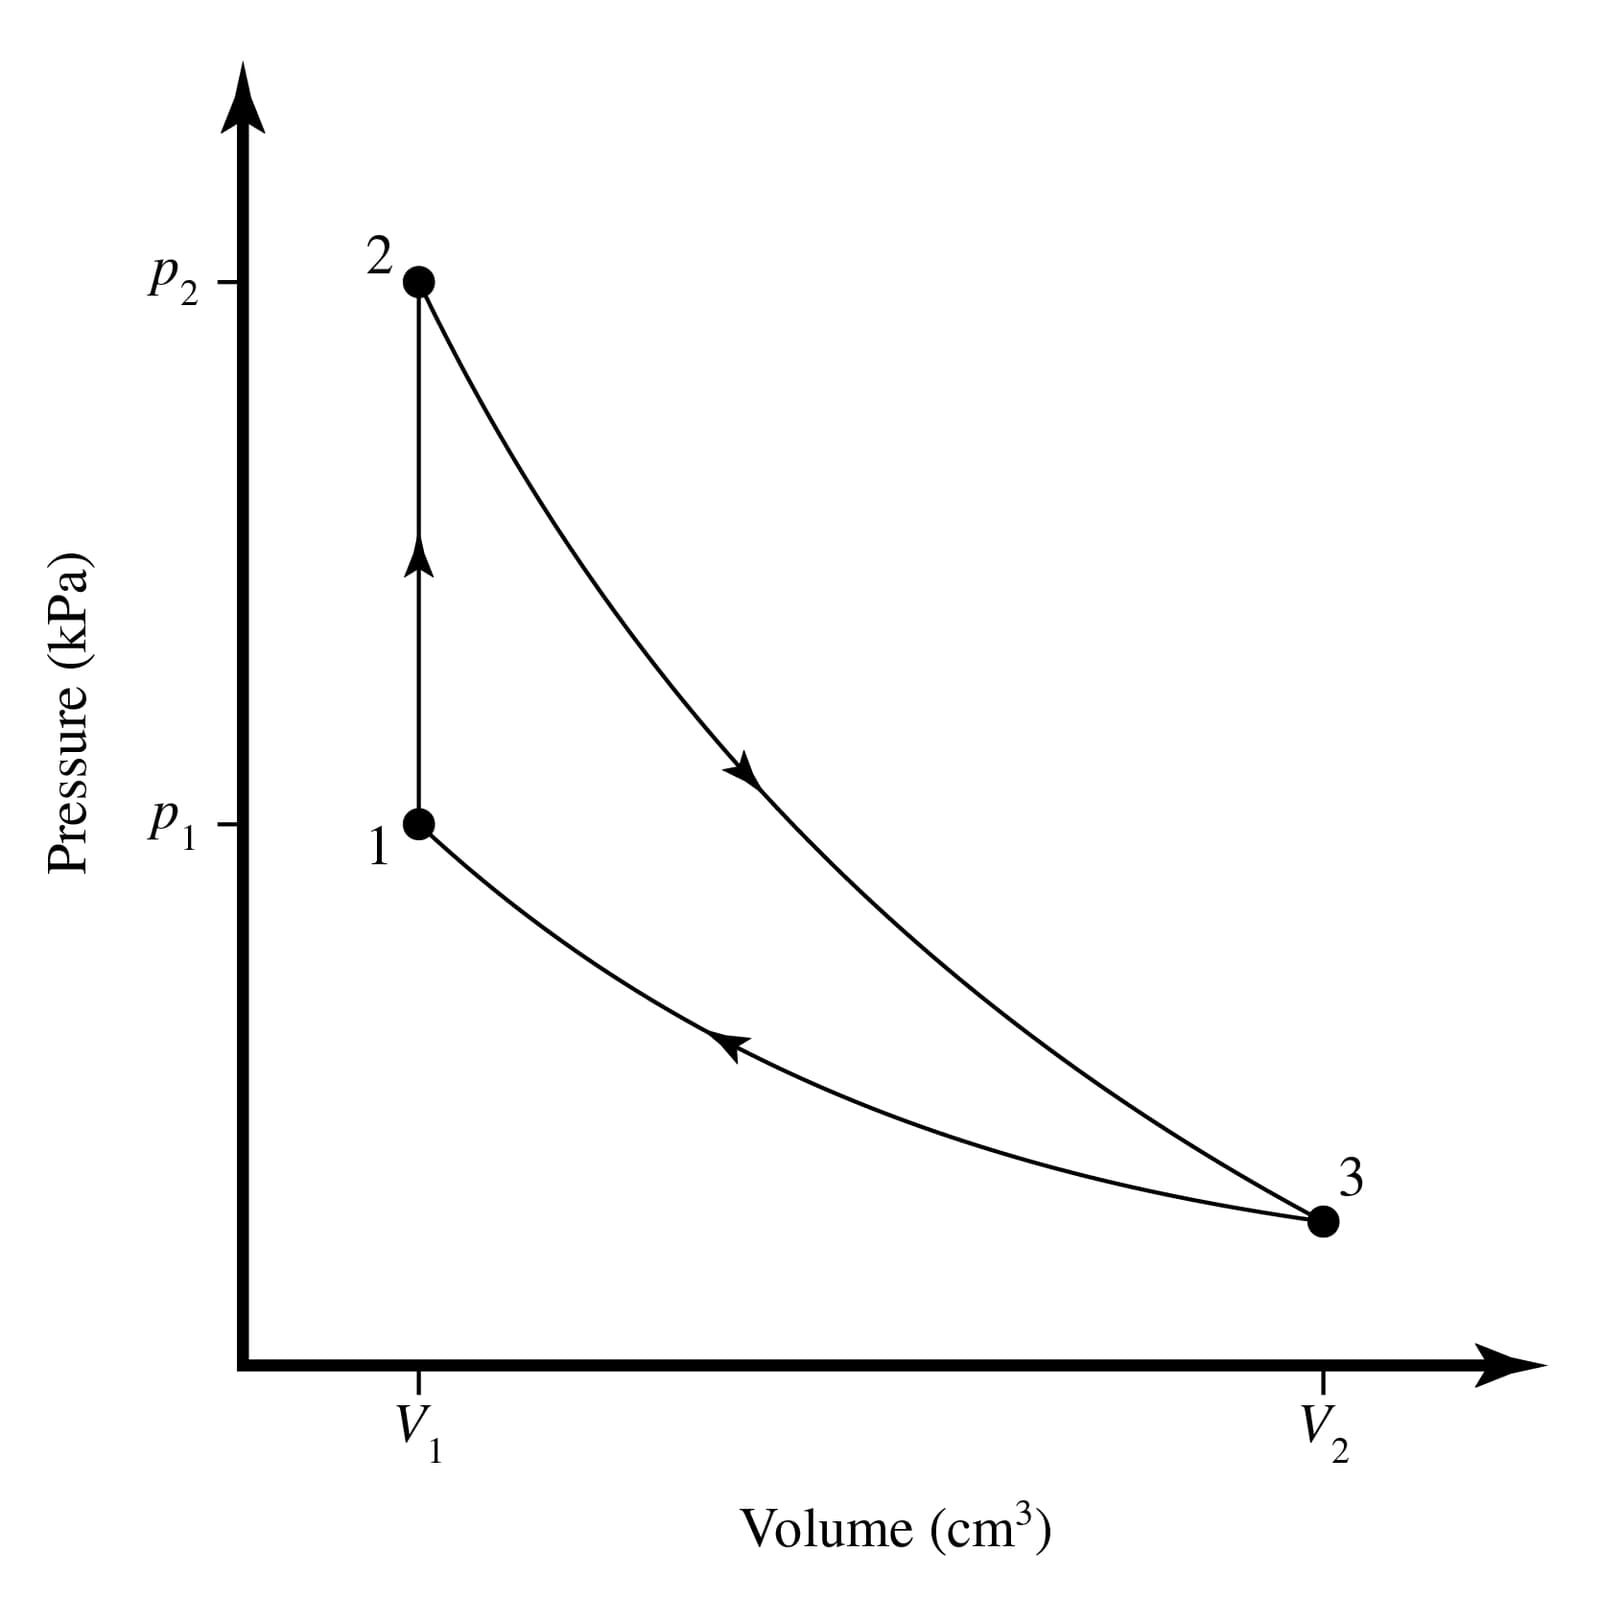 P2
1
3
V2
V.
Volume (cm³)
Pressure (kPa)
